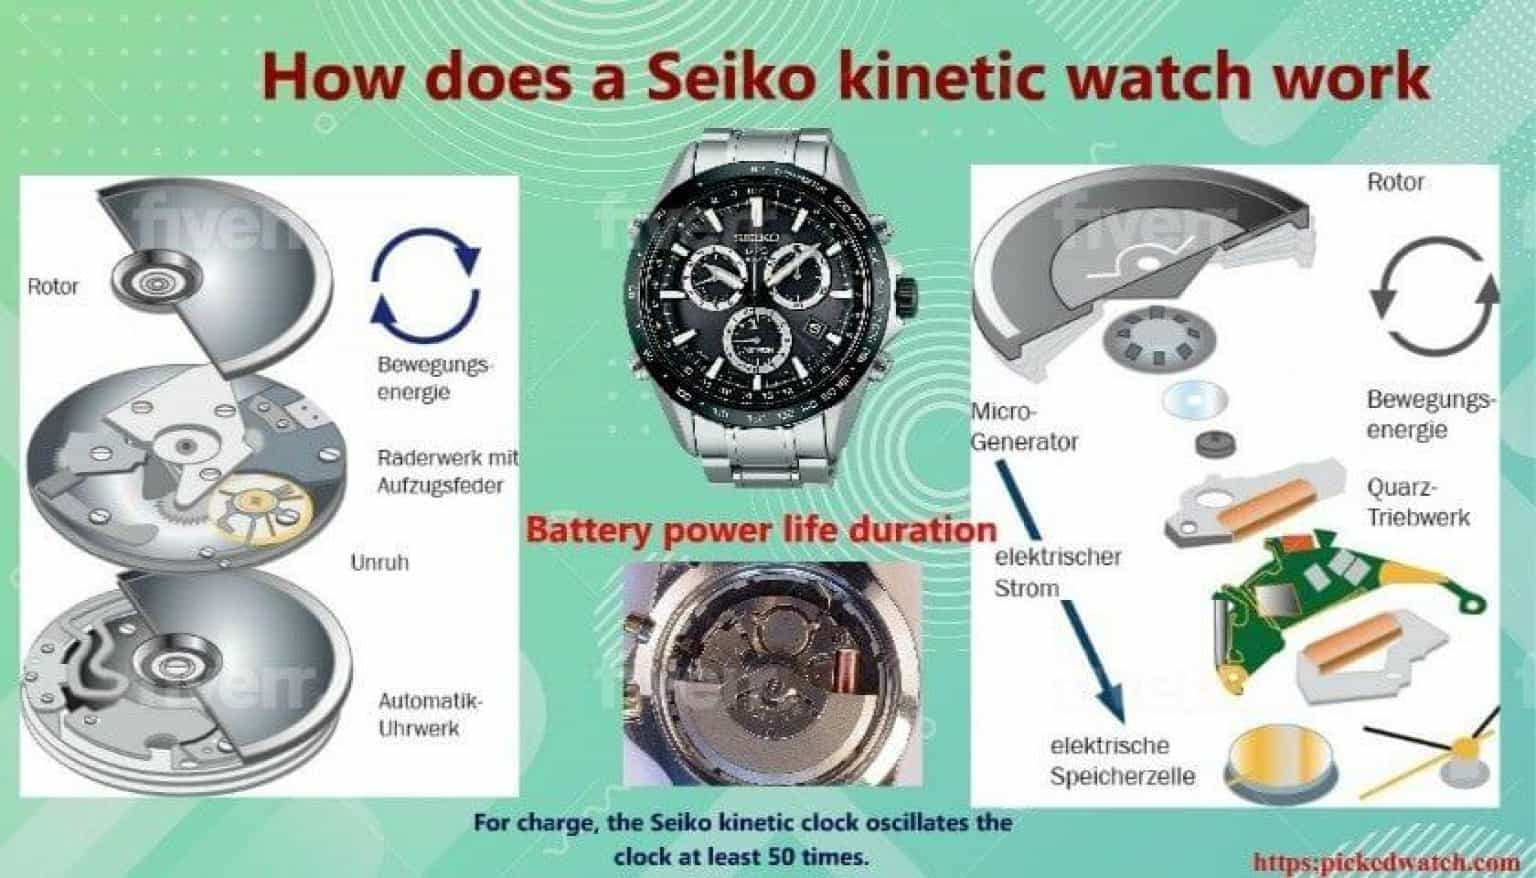 How does a Seiko kinetic watch work | Letâs Find Out the Answer